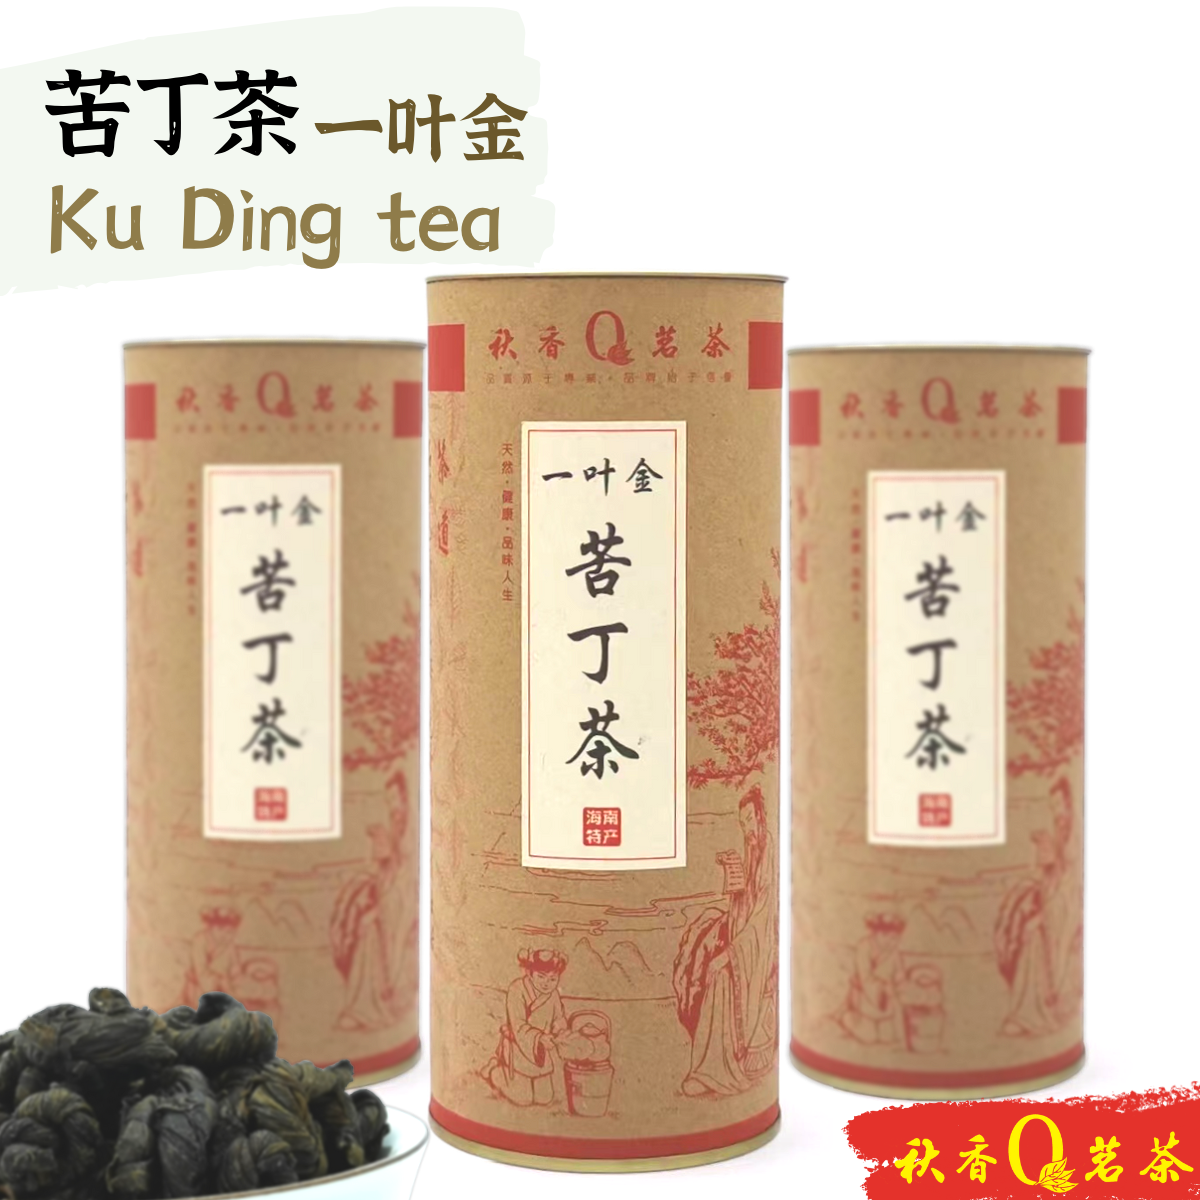 苦丁茶｜一叶金 Ku Ding tea (Broadleaf Holly Leaf Tea)【100g】| 【保健茶 Herbal tea】